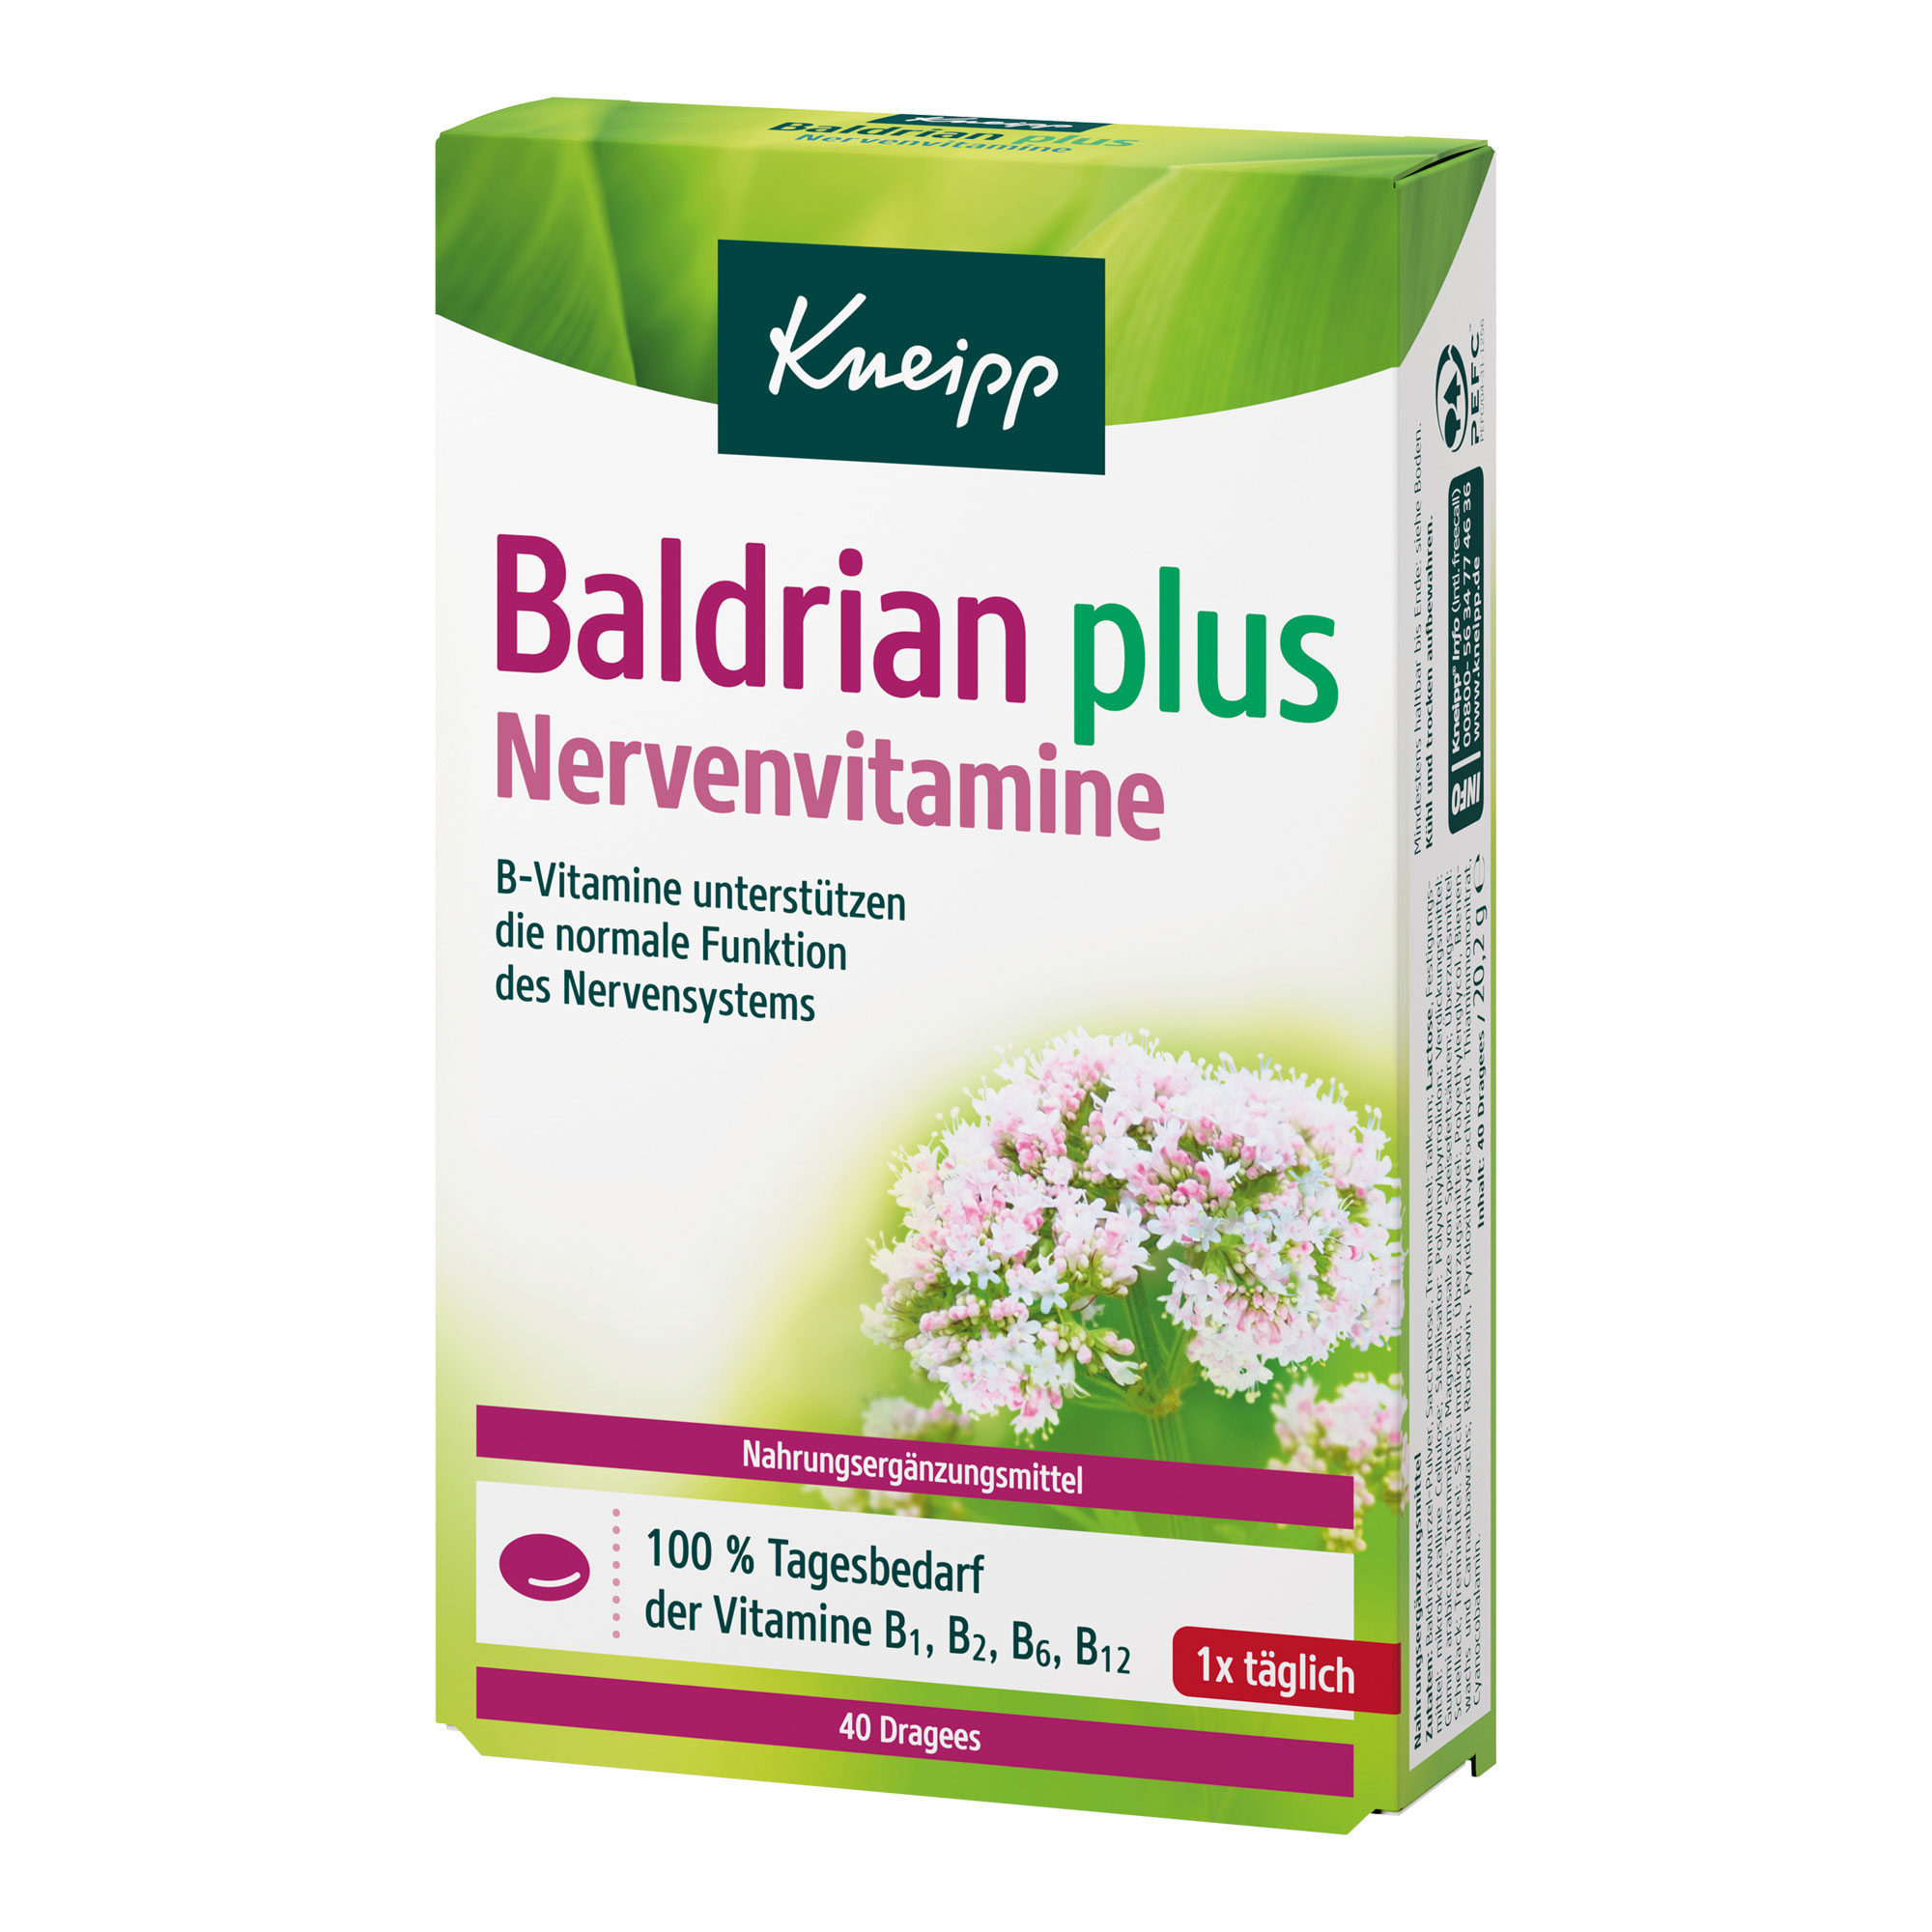 Nahrungsergänzungsmittel mit B-Vitaminen und Baldrianwurzel-Pulver.